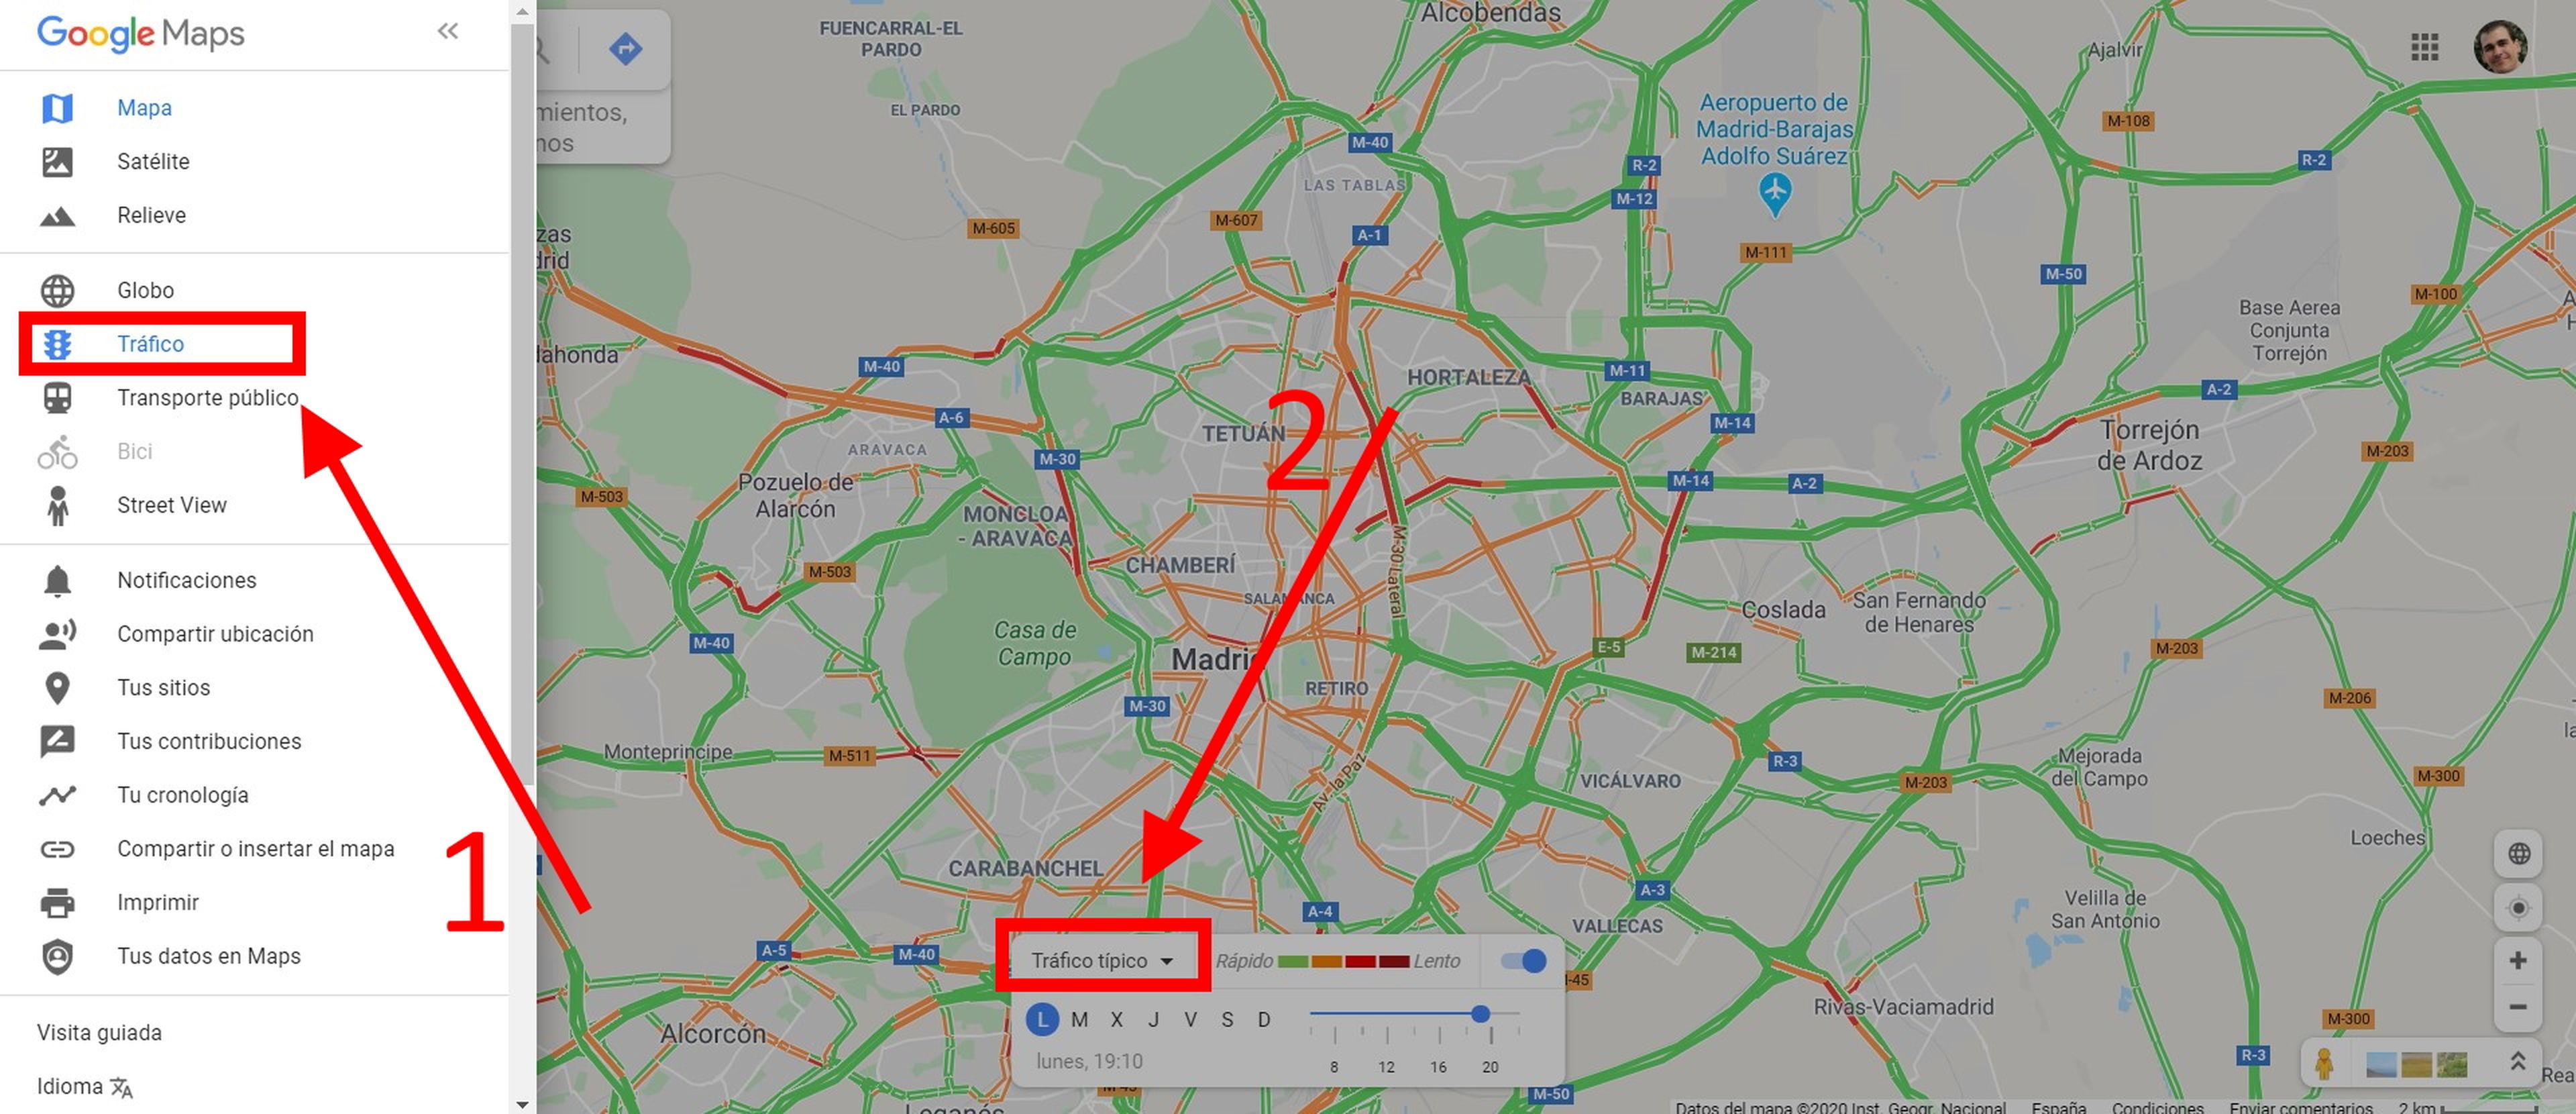 Conoce el tráfico habitual a cualquier hora del día en Google Maps